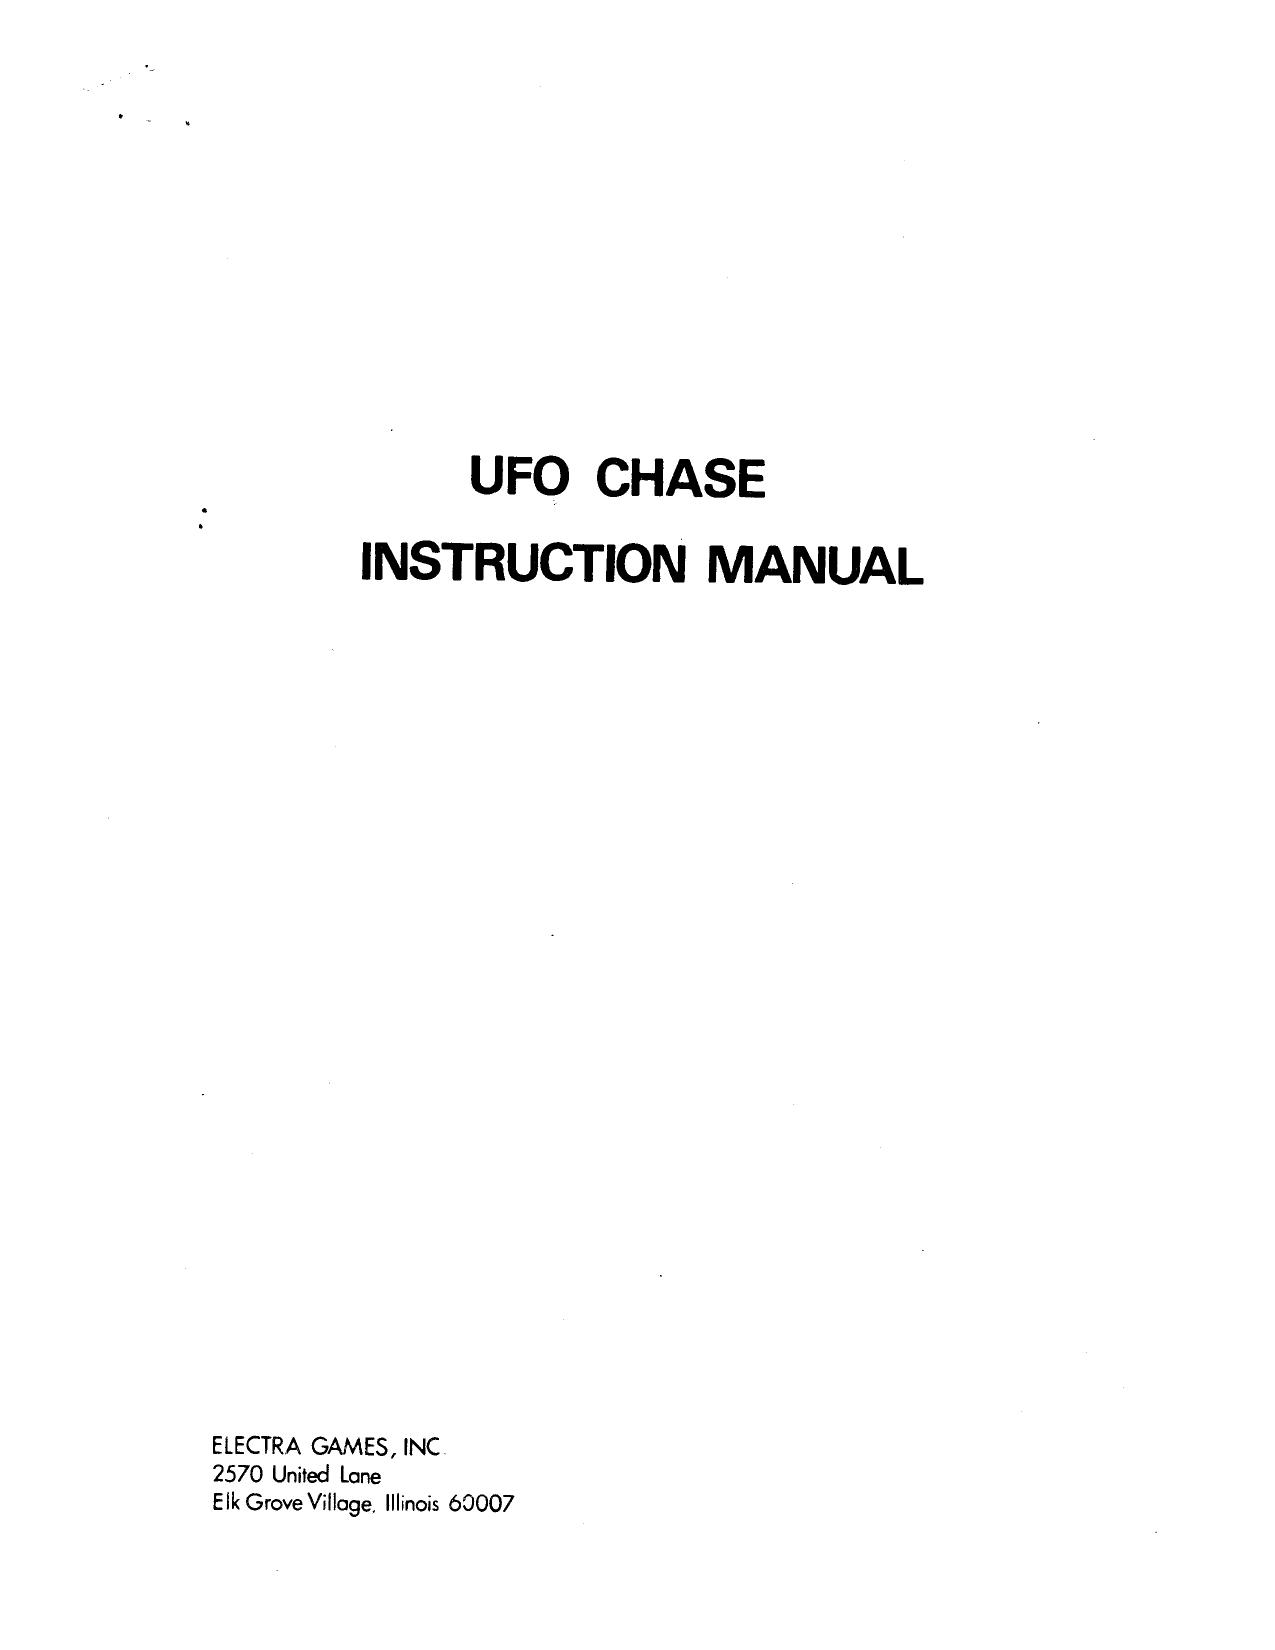 UFO Chase